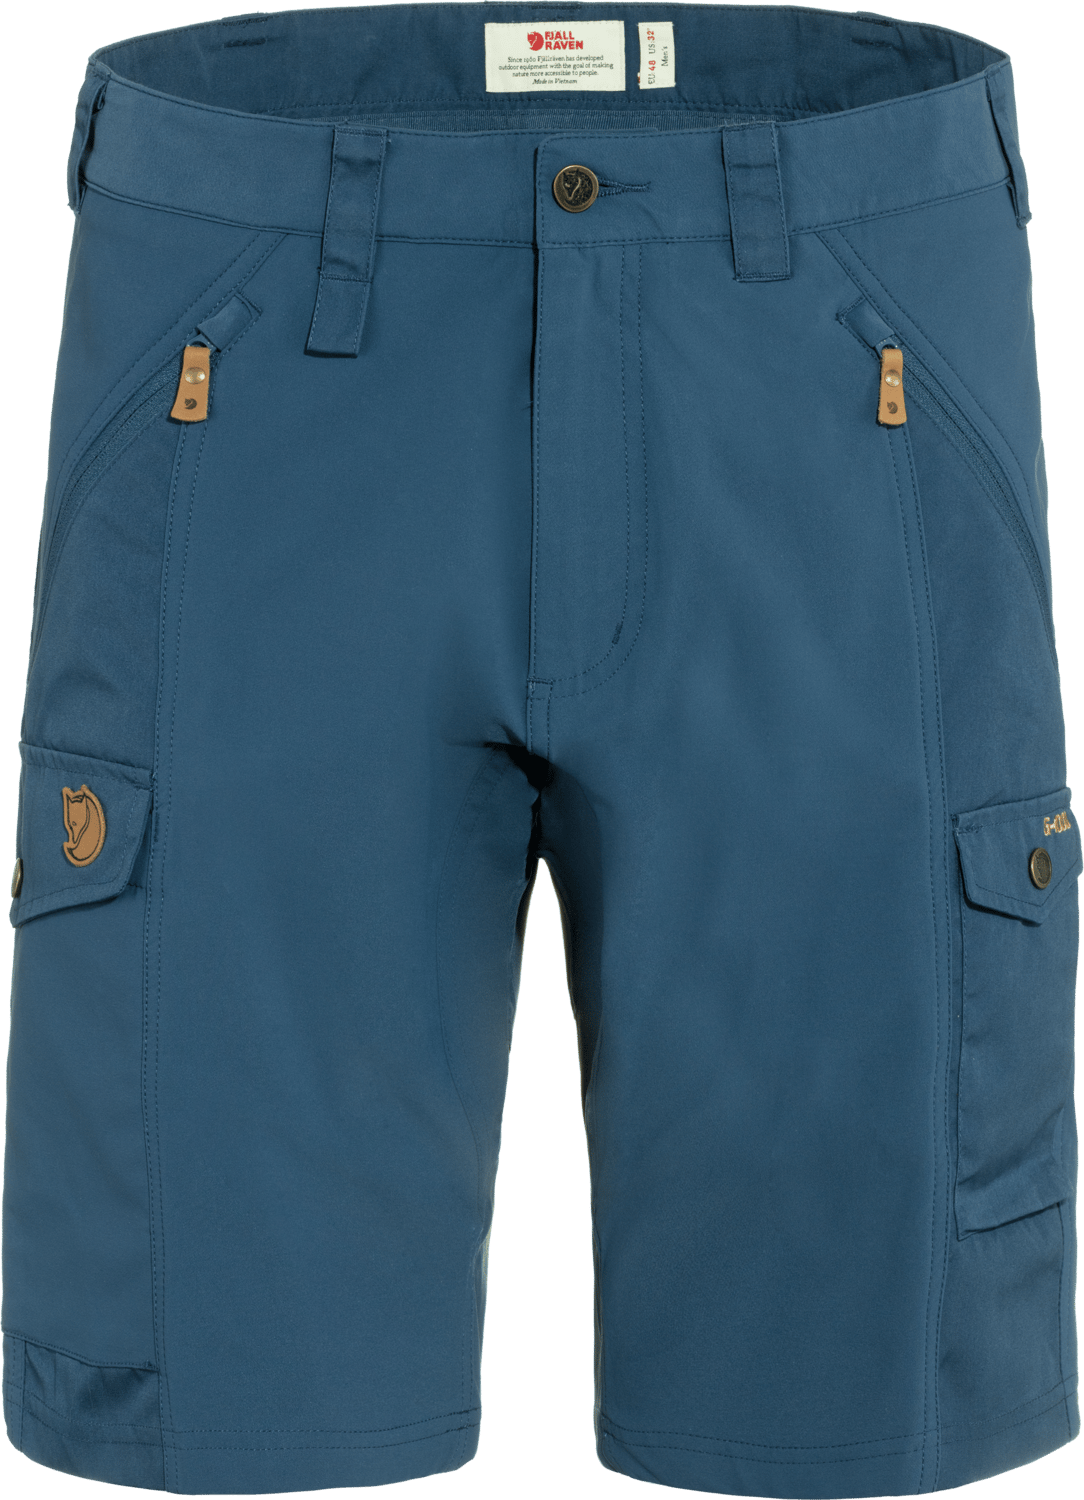 Fjällräven Men's Abisko Shorts Indigo Blue